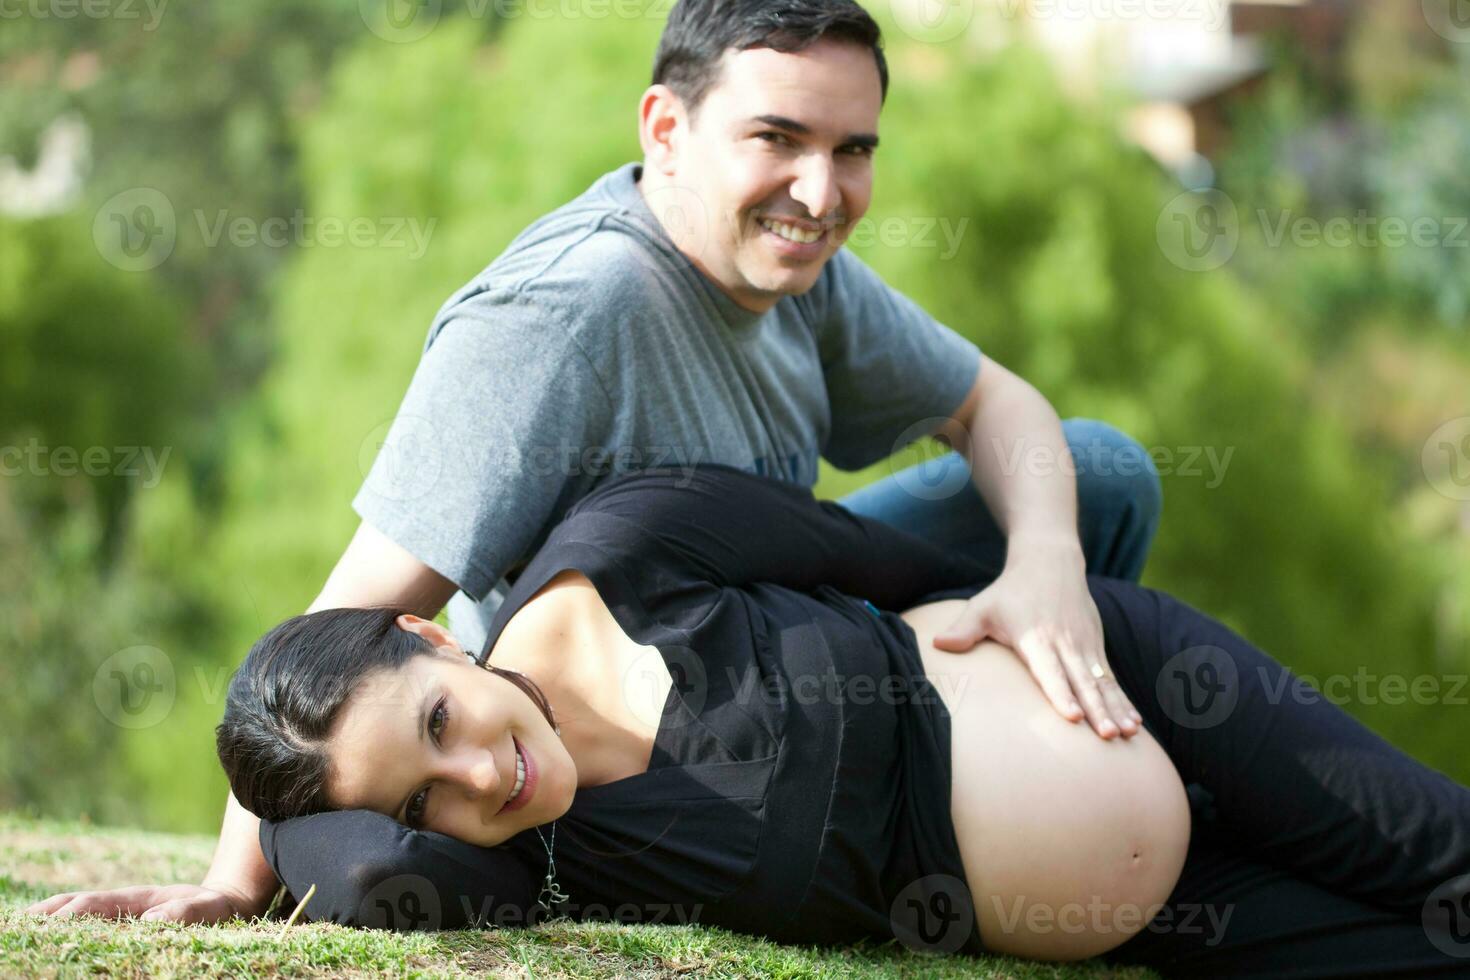 coppia in attesa per loro bambino - 38 settimane foto